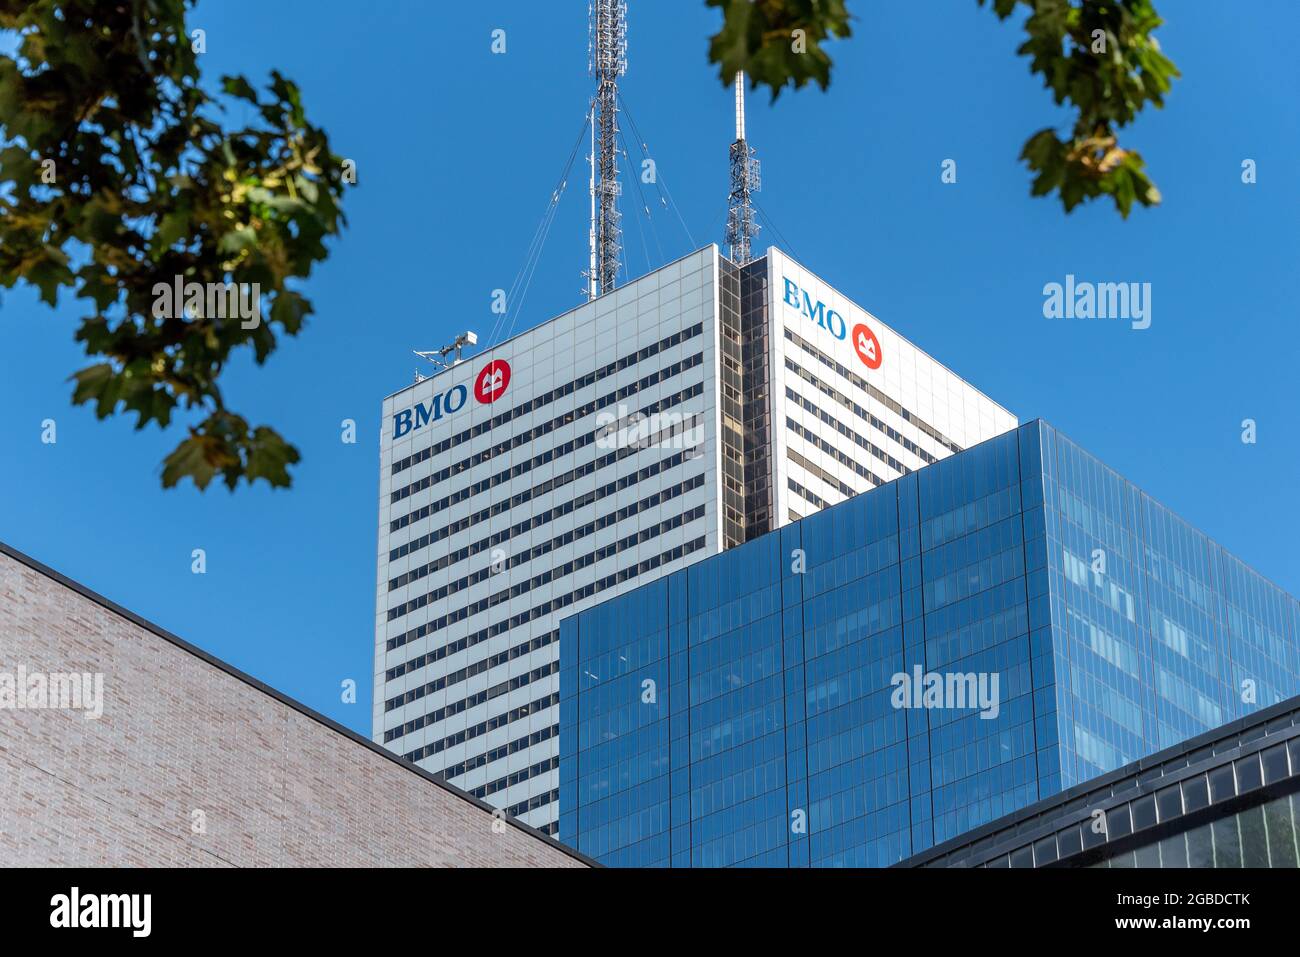 Logotipo del Banco de Montreal o BMO en la parte superior de una torre de rascacielos en el distrito financiero de Toronto, Canadá Foto de stock